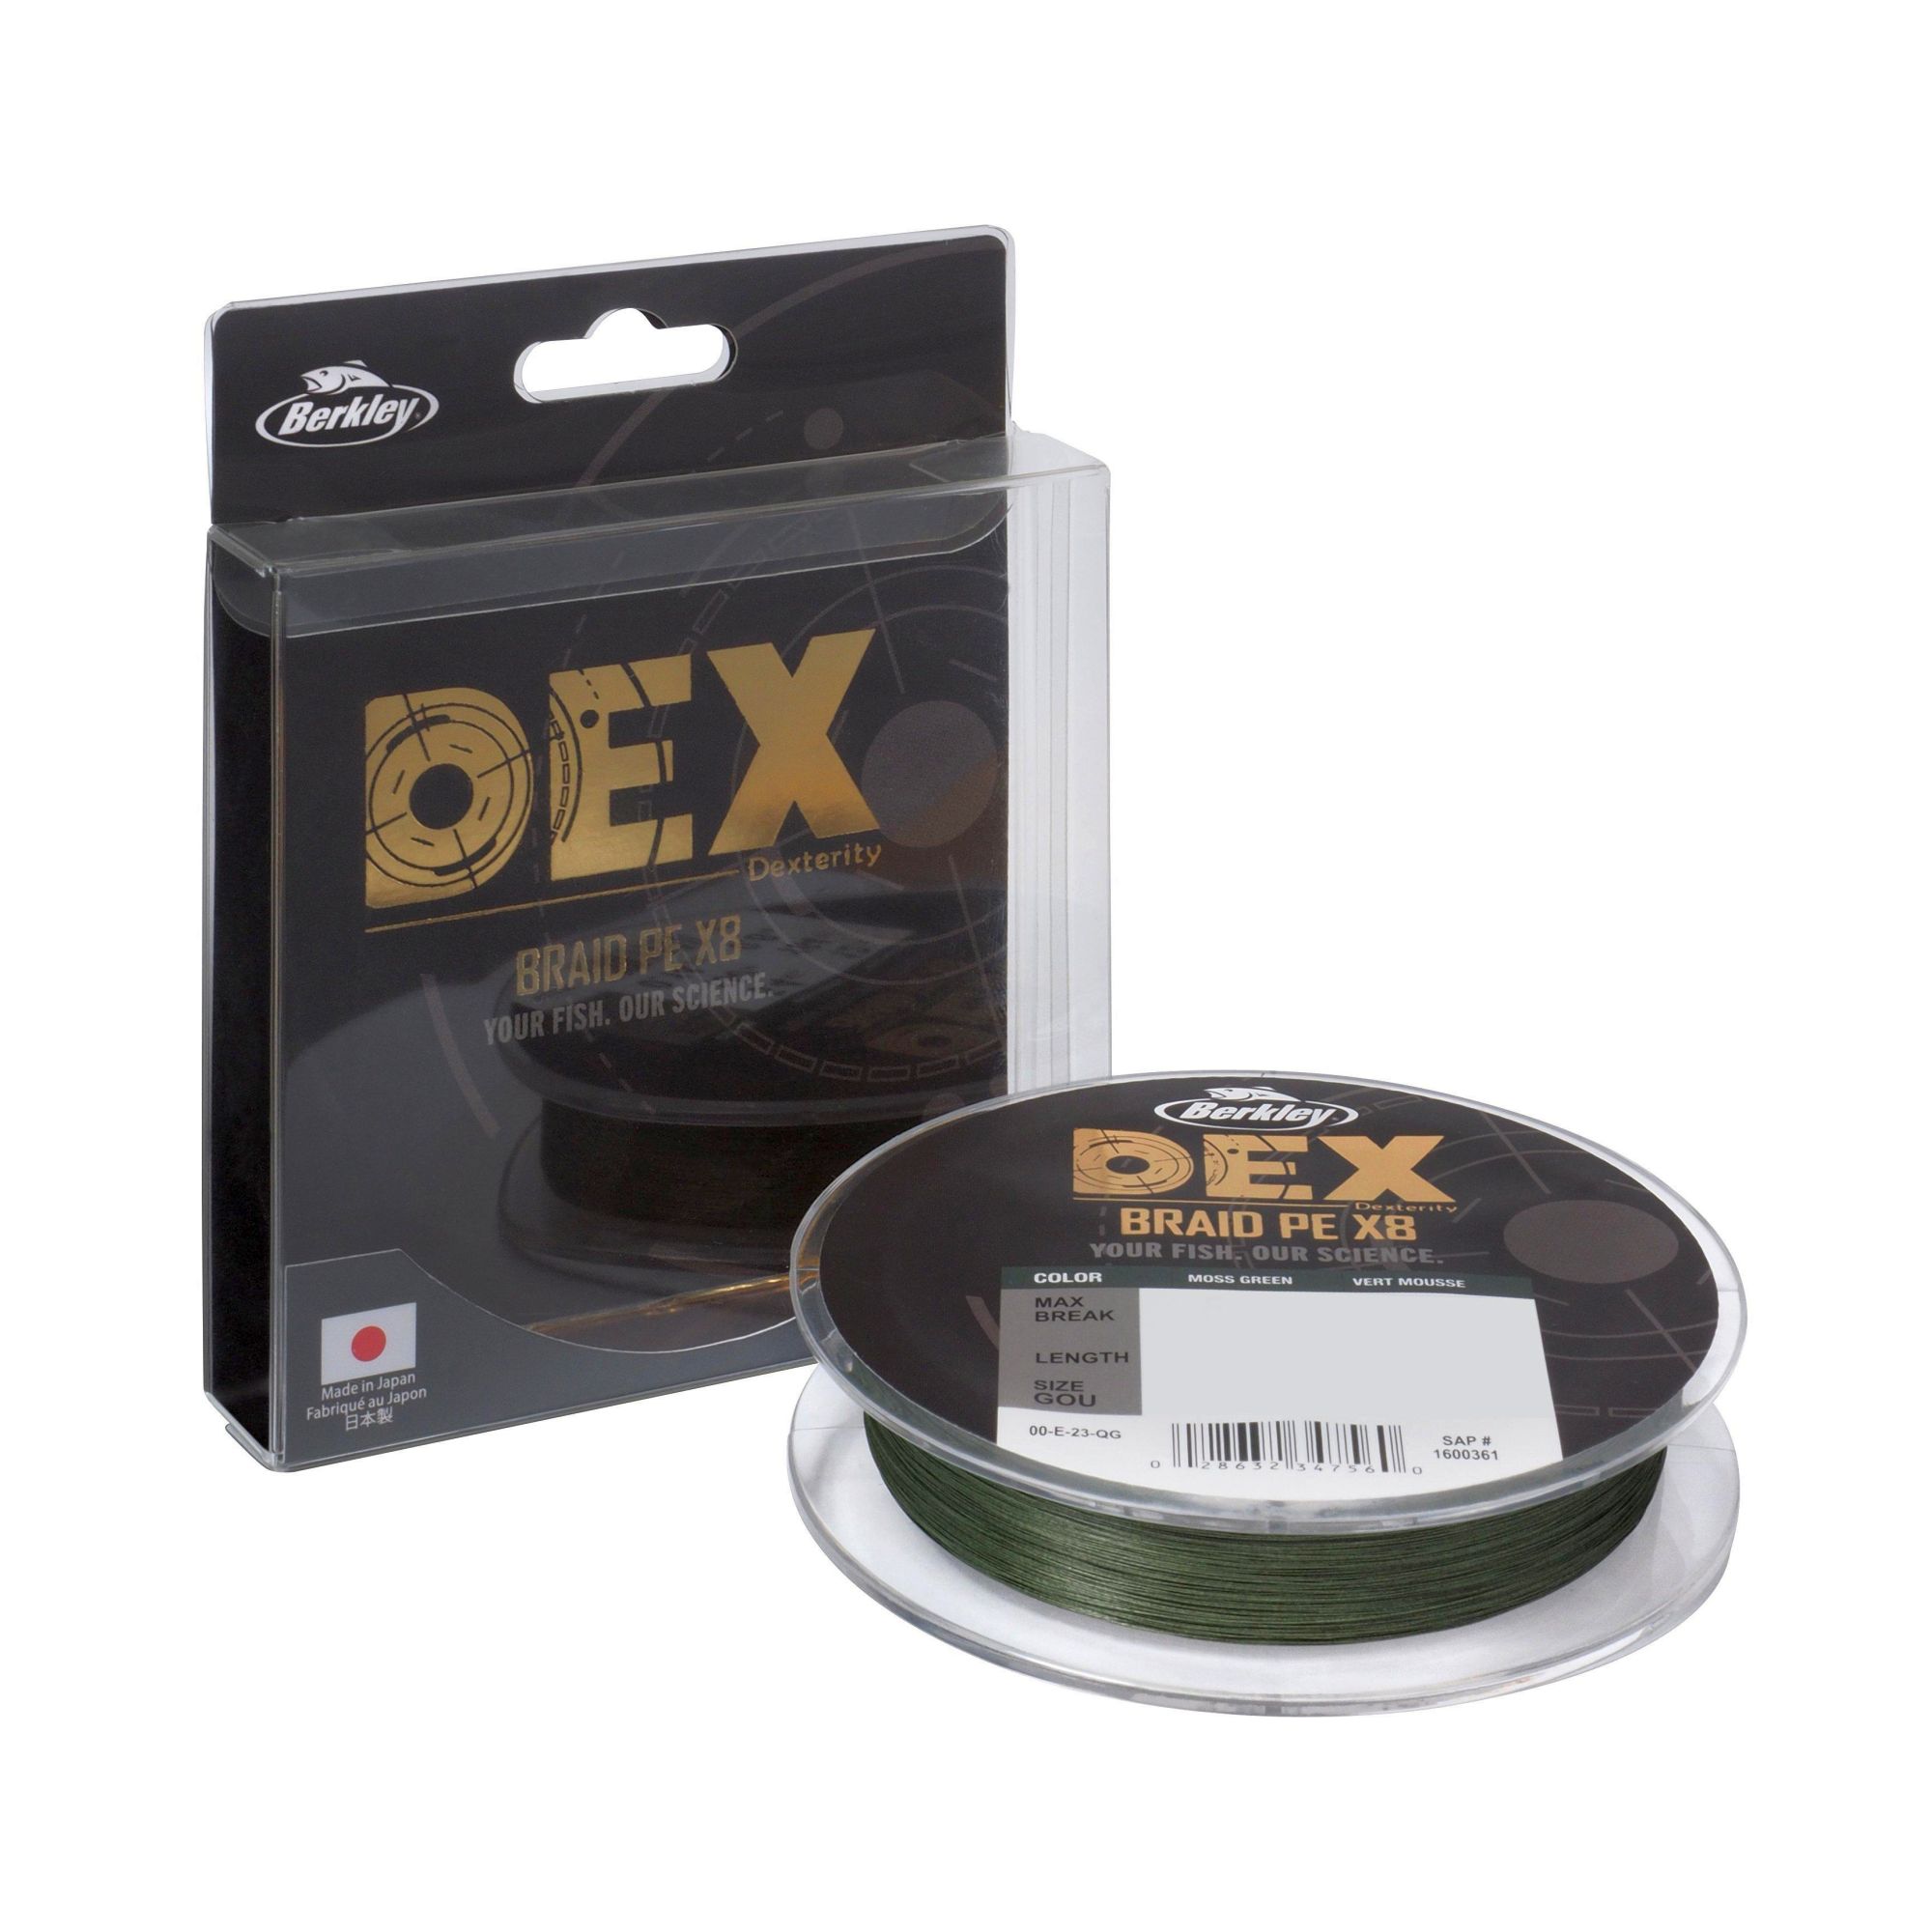 BERKLEY DEX Braid PE X8 Moss Green 150 m 0,10 mm 7,9 kg